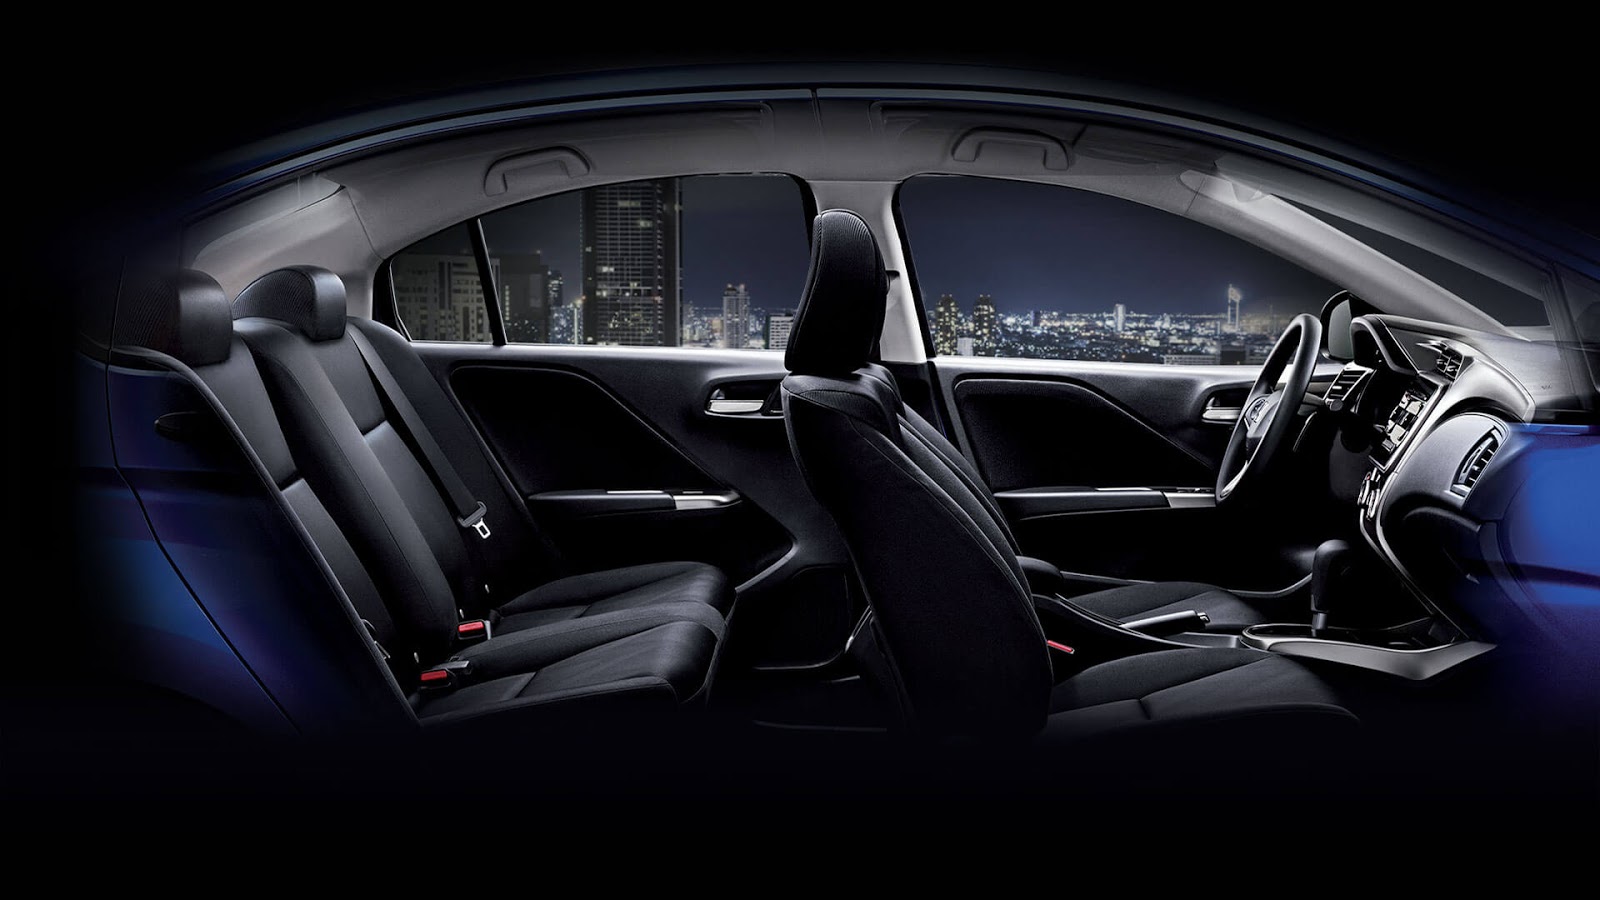 Với tiêu chí mang đến sự rộng rãi và thoải mái tối đa cho người cầm lái cũng như người đồng hành, nội thất của Honda City 2016 là bản thiết kế hoàn hảo đến từng chi tiết về mặt không gian và tiện ích, cho người dùng cảm nhận sự khác biệt.